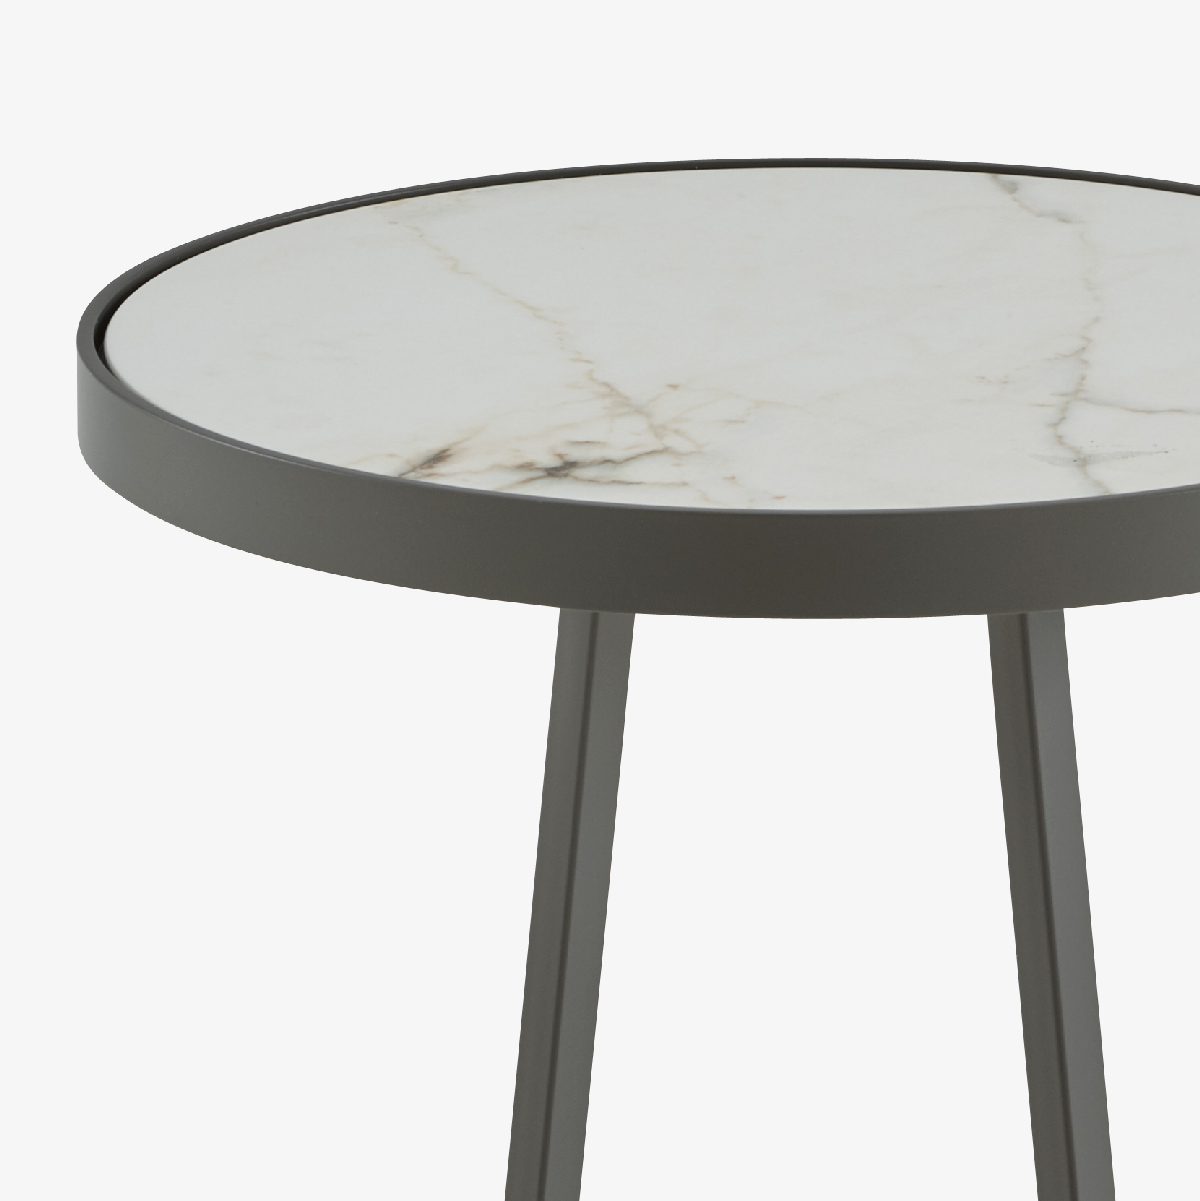 Image 茶几 - 户外 桌面由白色大理石效果的太空瓷制成 小型 3